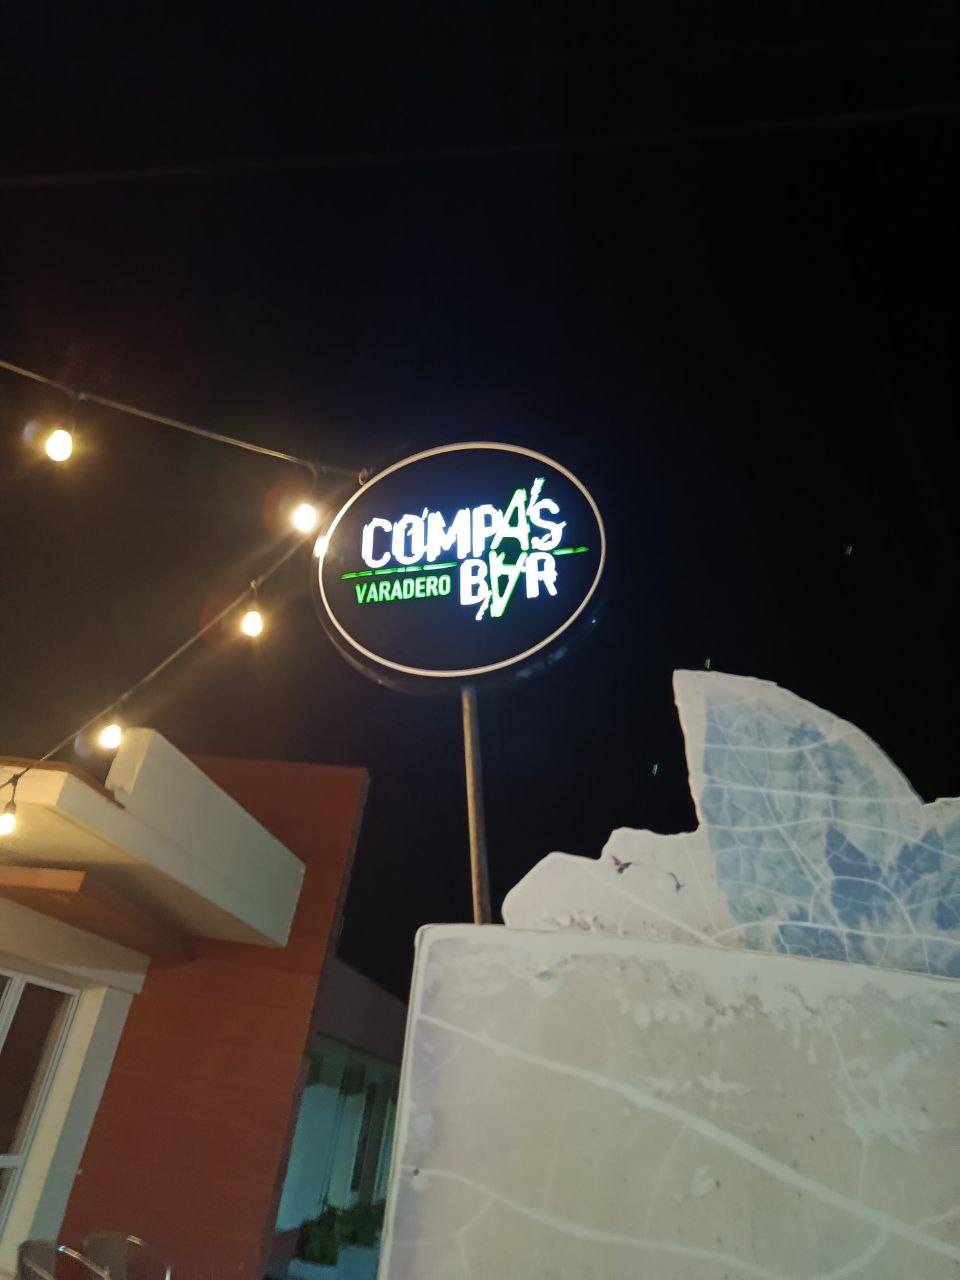 Вывеска бара Compas в Варадеро